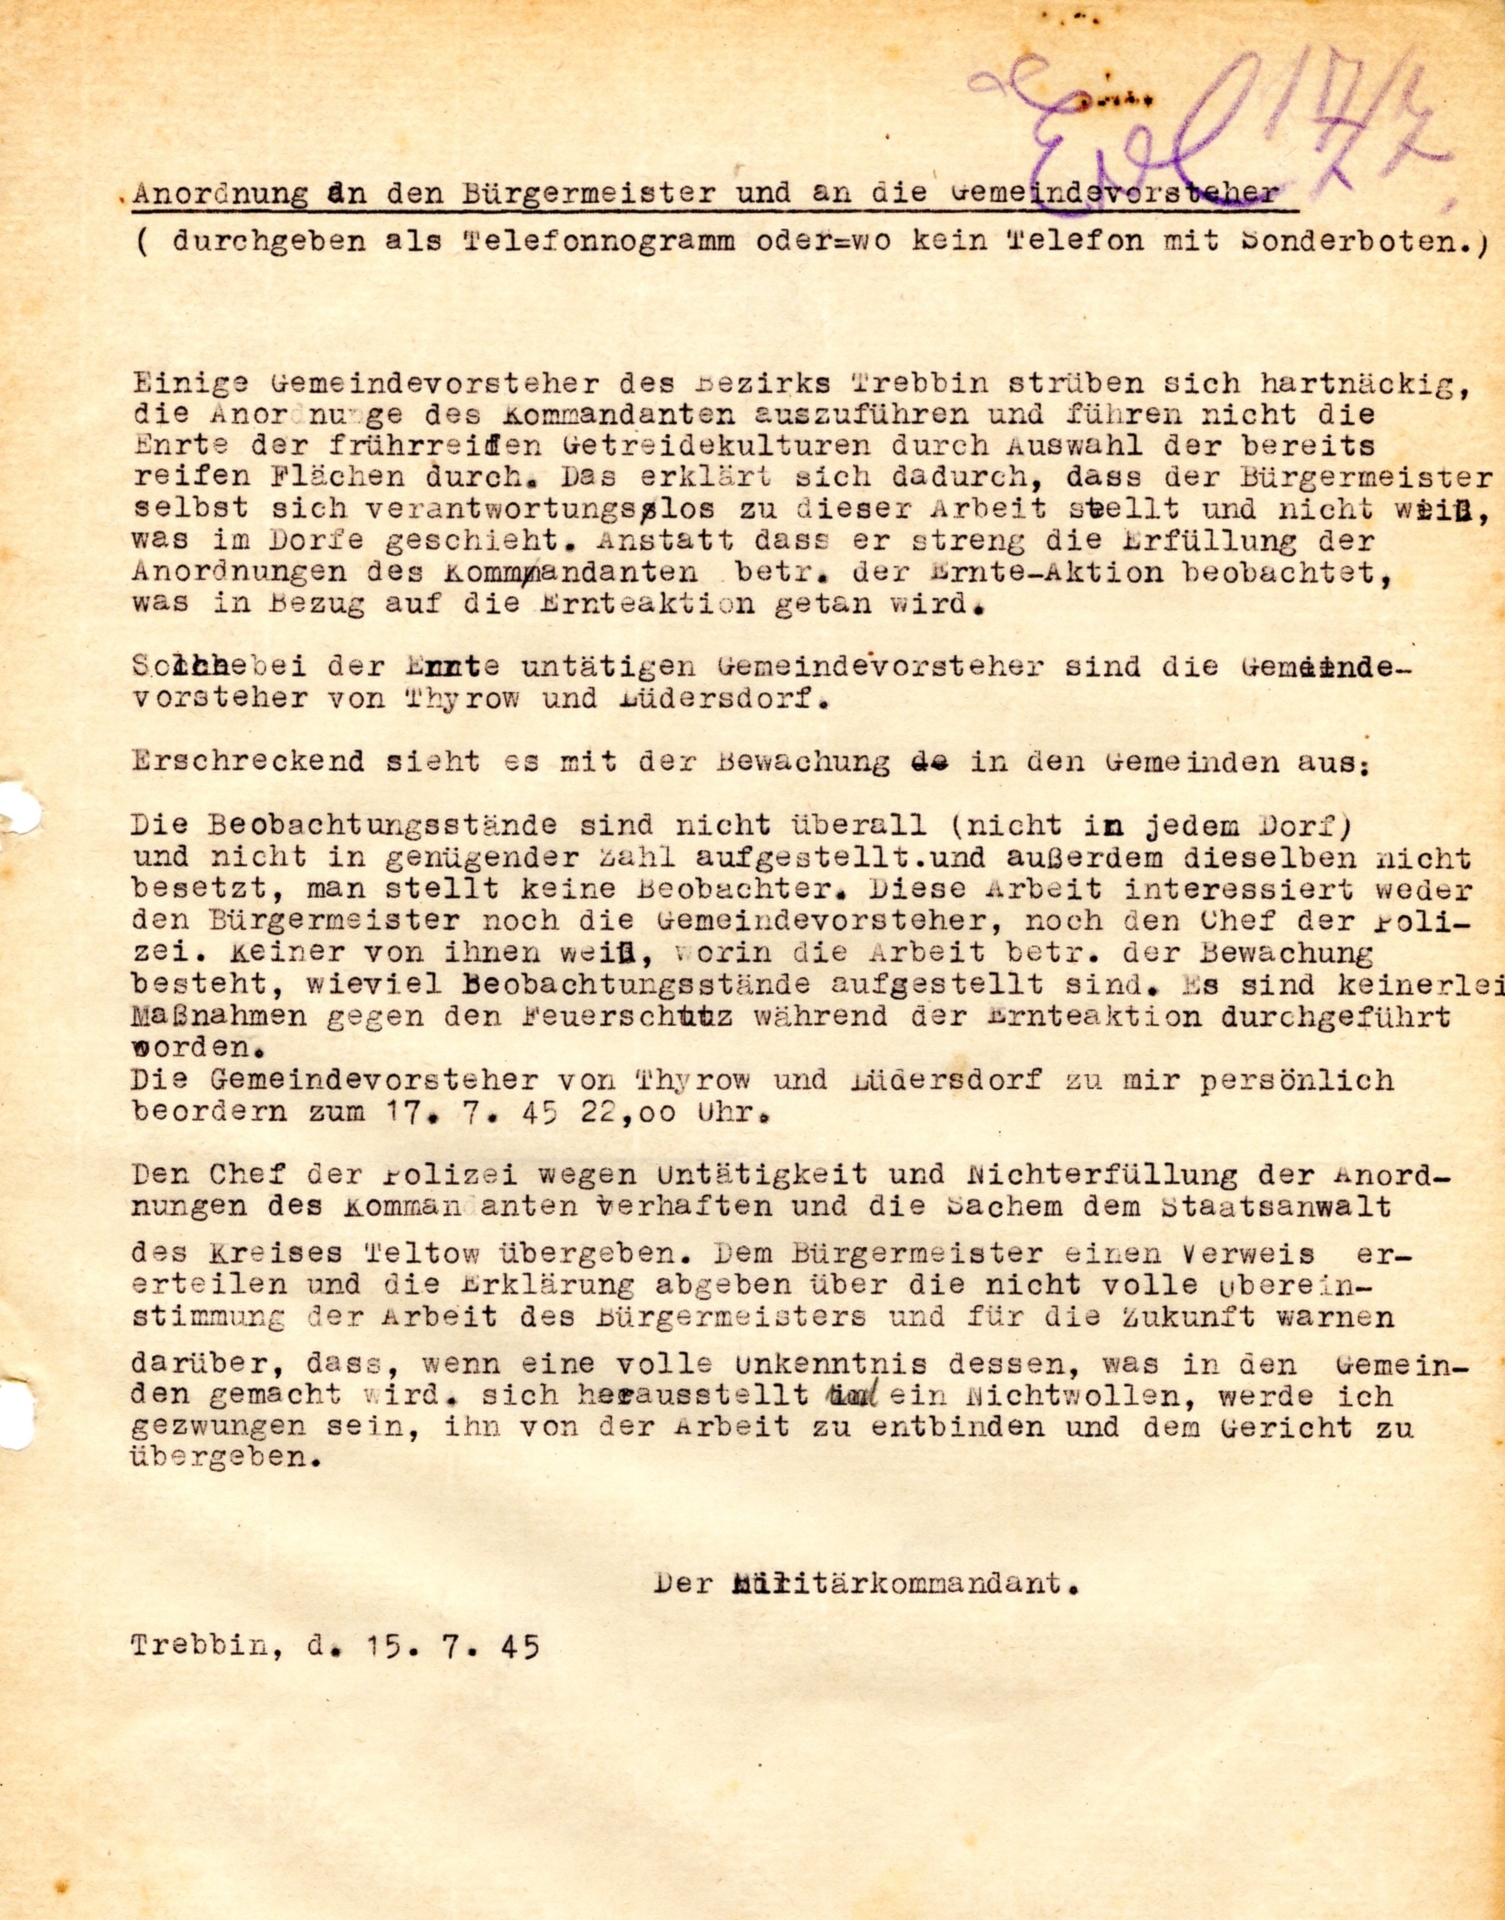 Brief Militärkommandant-Durchführung der Getreideernte nicht überall-15.7.1945